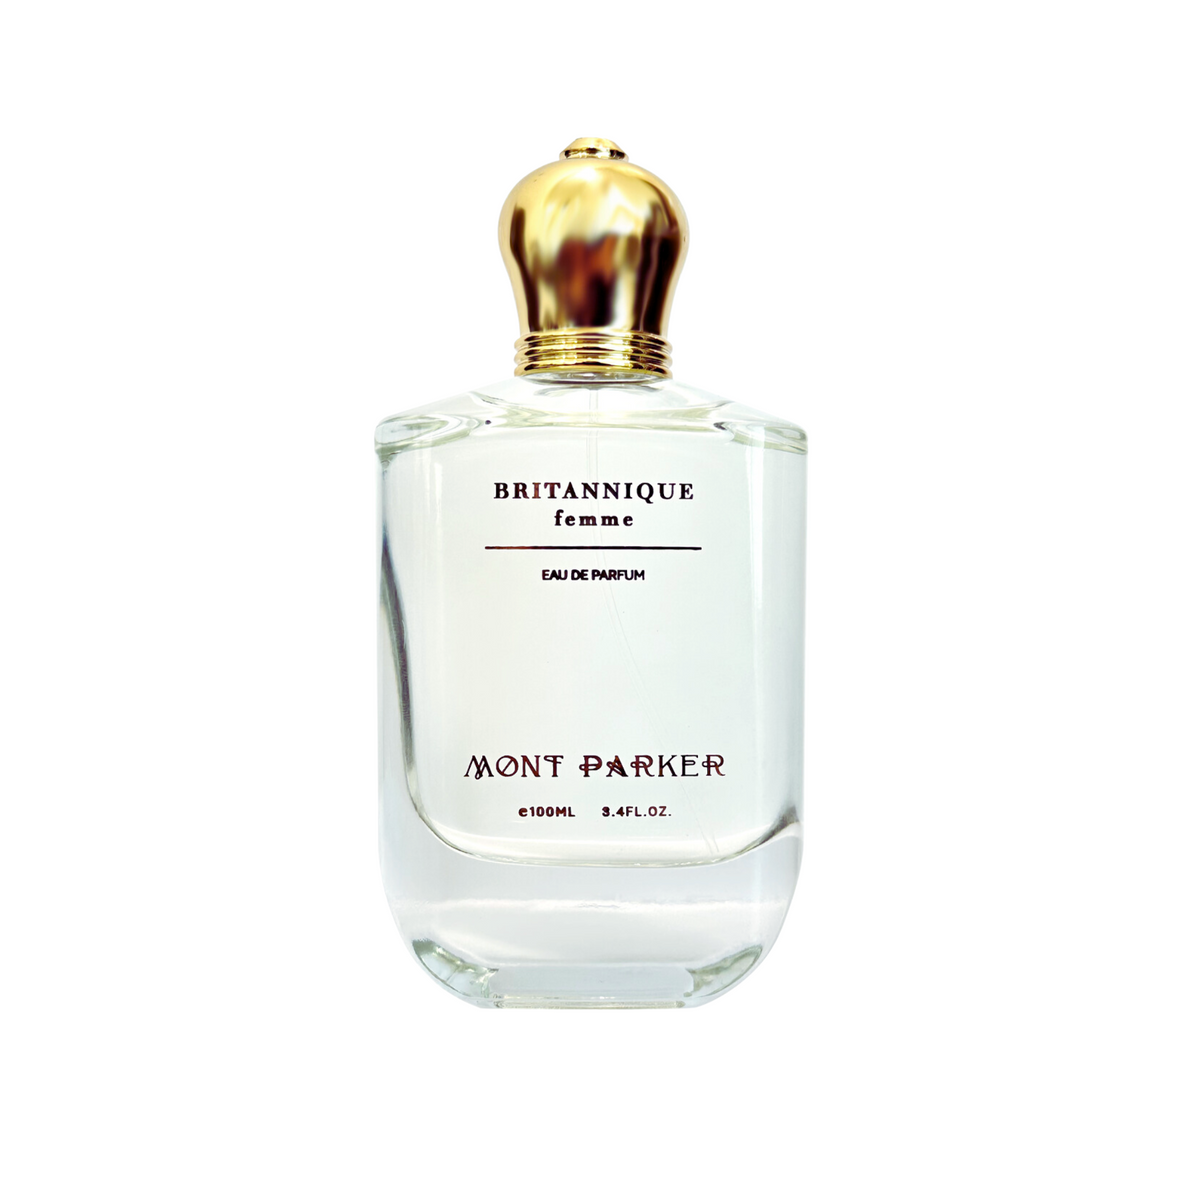 Mont Parker Britannique Femme Eau De Parfum